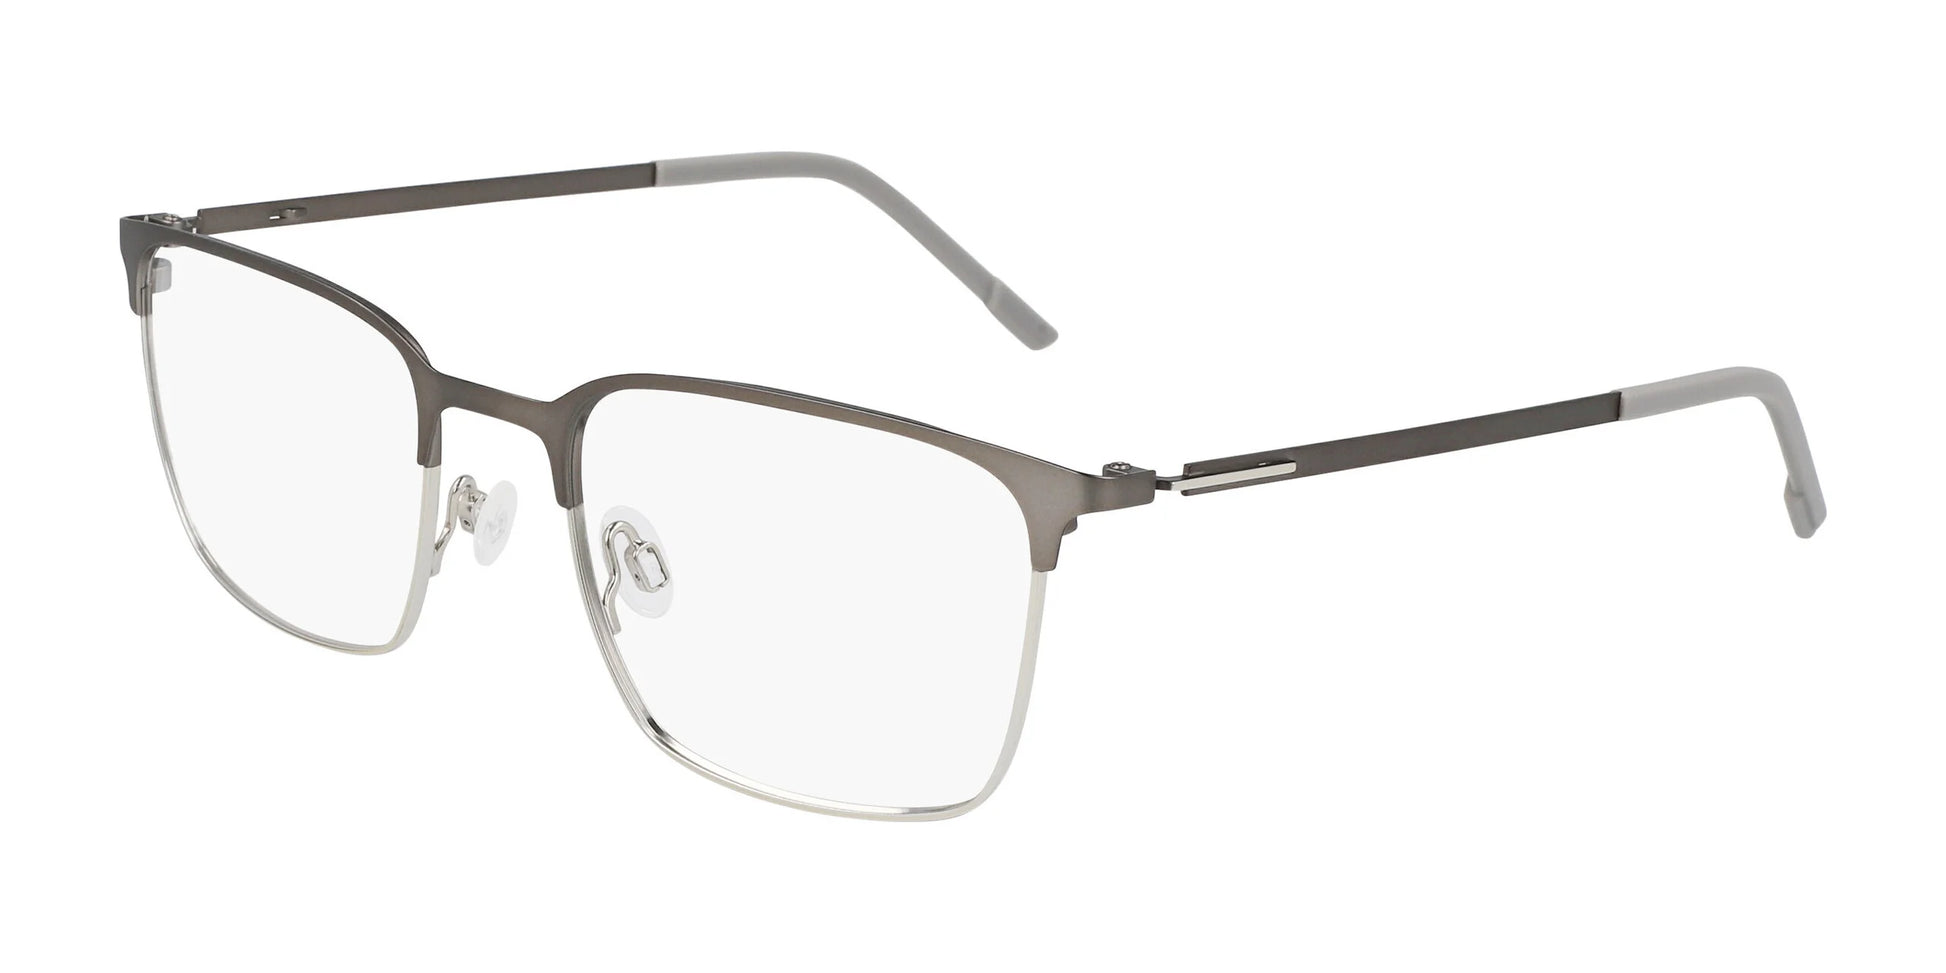 Flexon E1140 Eyeglasses Matte Gunmetal / Silver